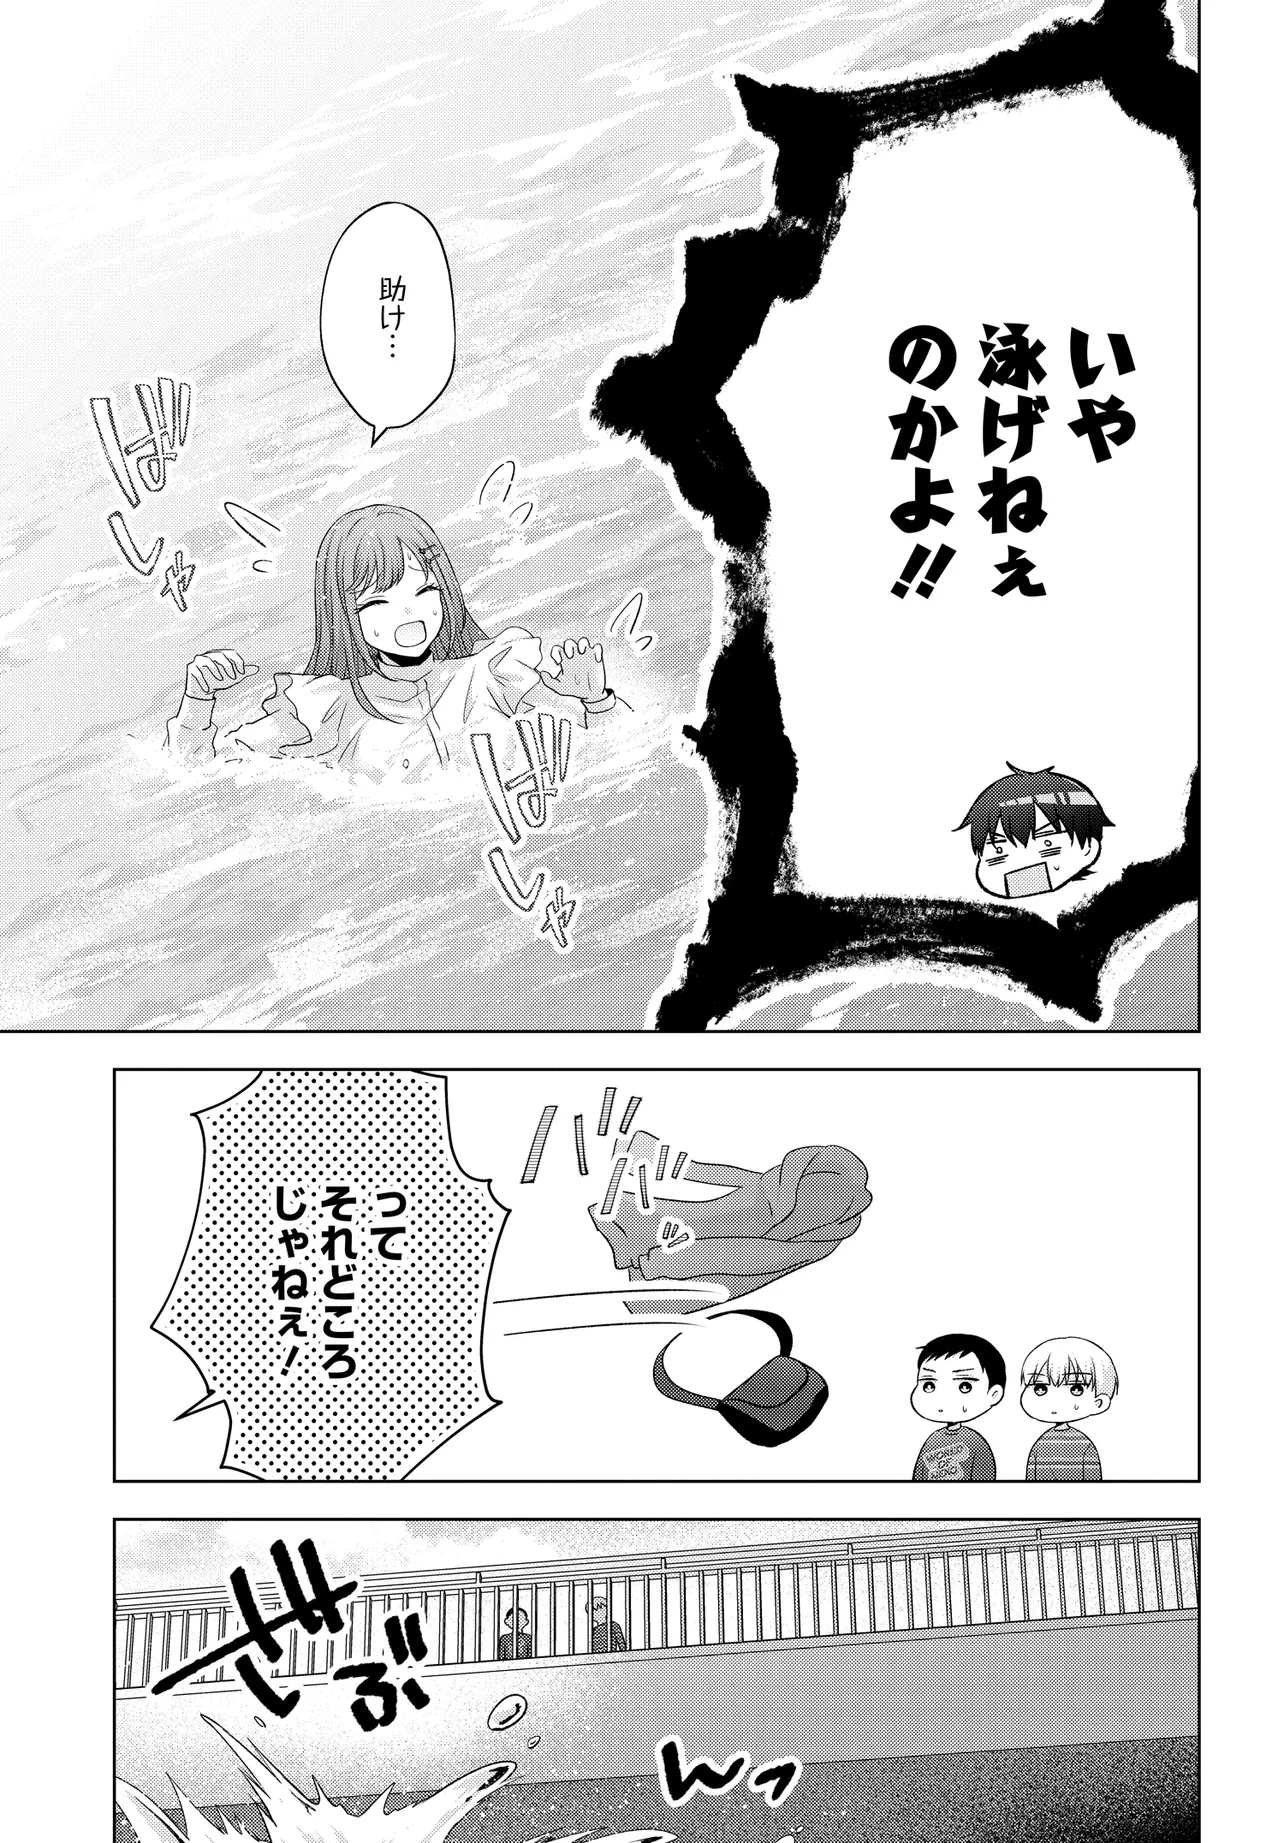 Suufun Go no Mirai ga Wakaru you ni Natta kedo, Onnagokoro wa Wakaranai. - Chapter 1 - Page 27